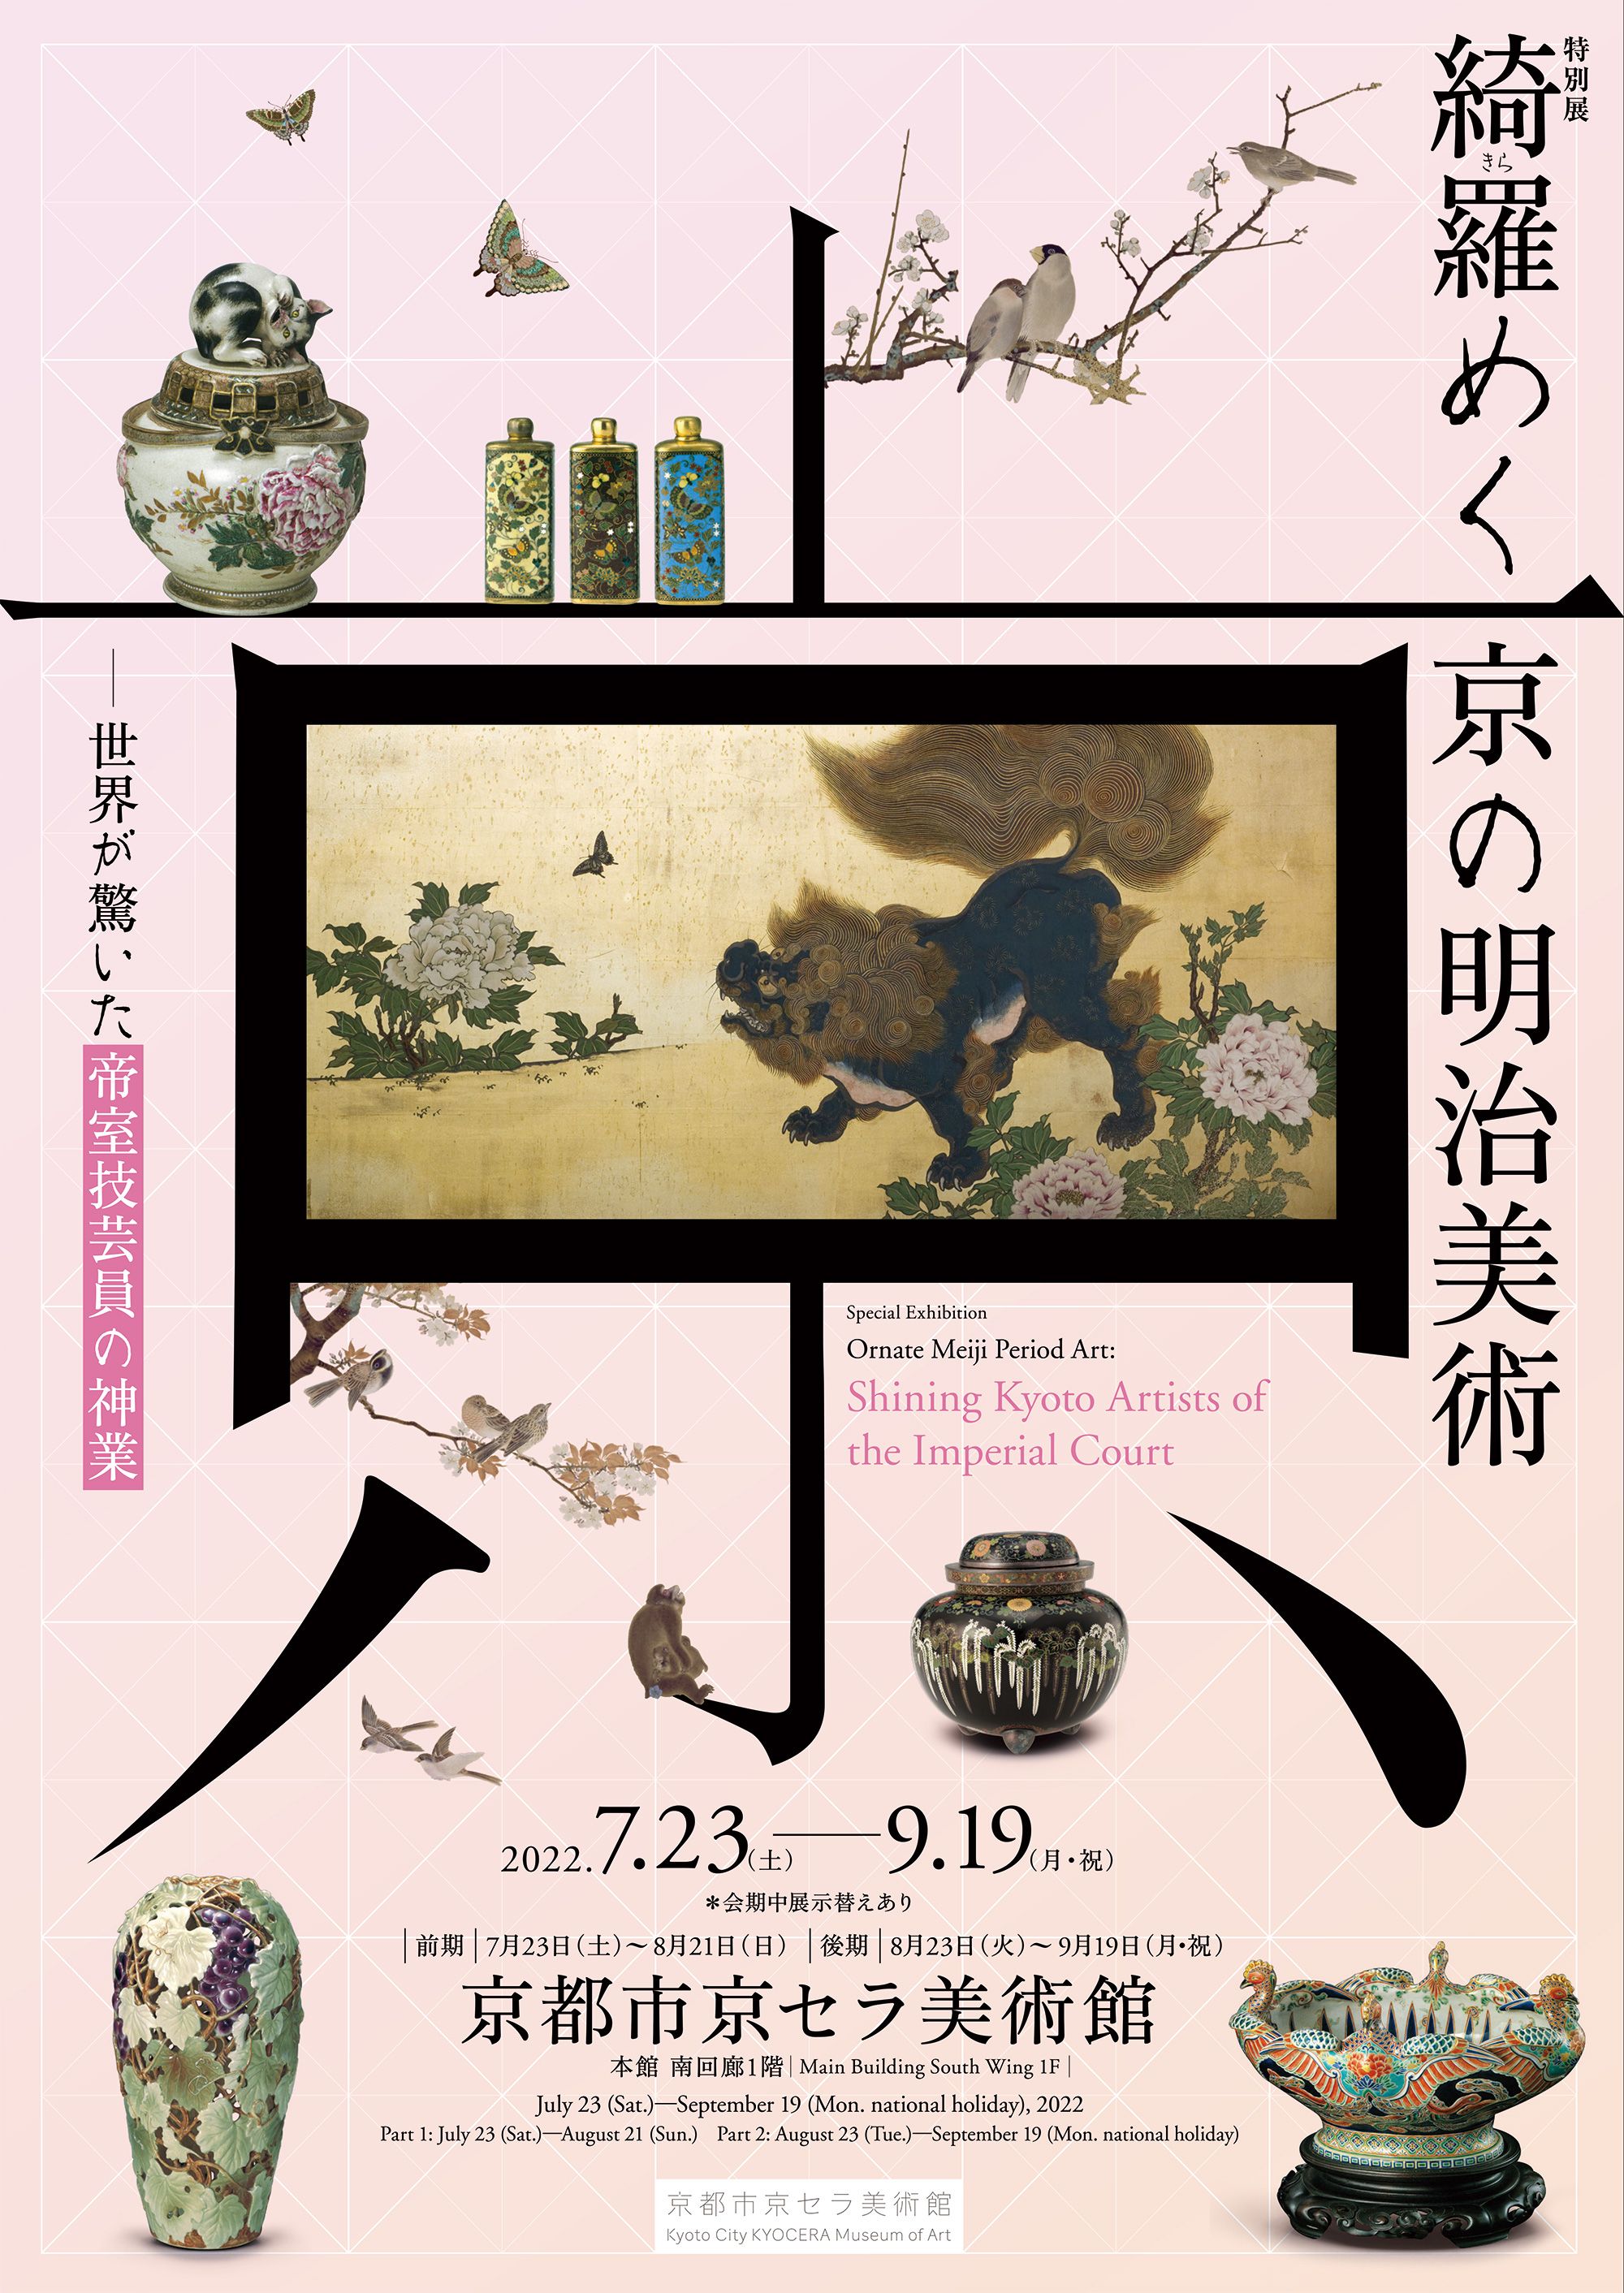 世界が驚いた最高峰の技と美！「綺羅（きら）めく京の明治美術」京都で